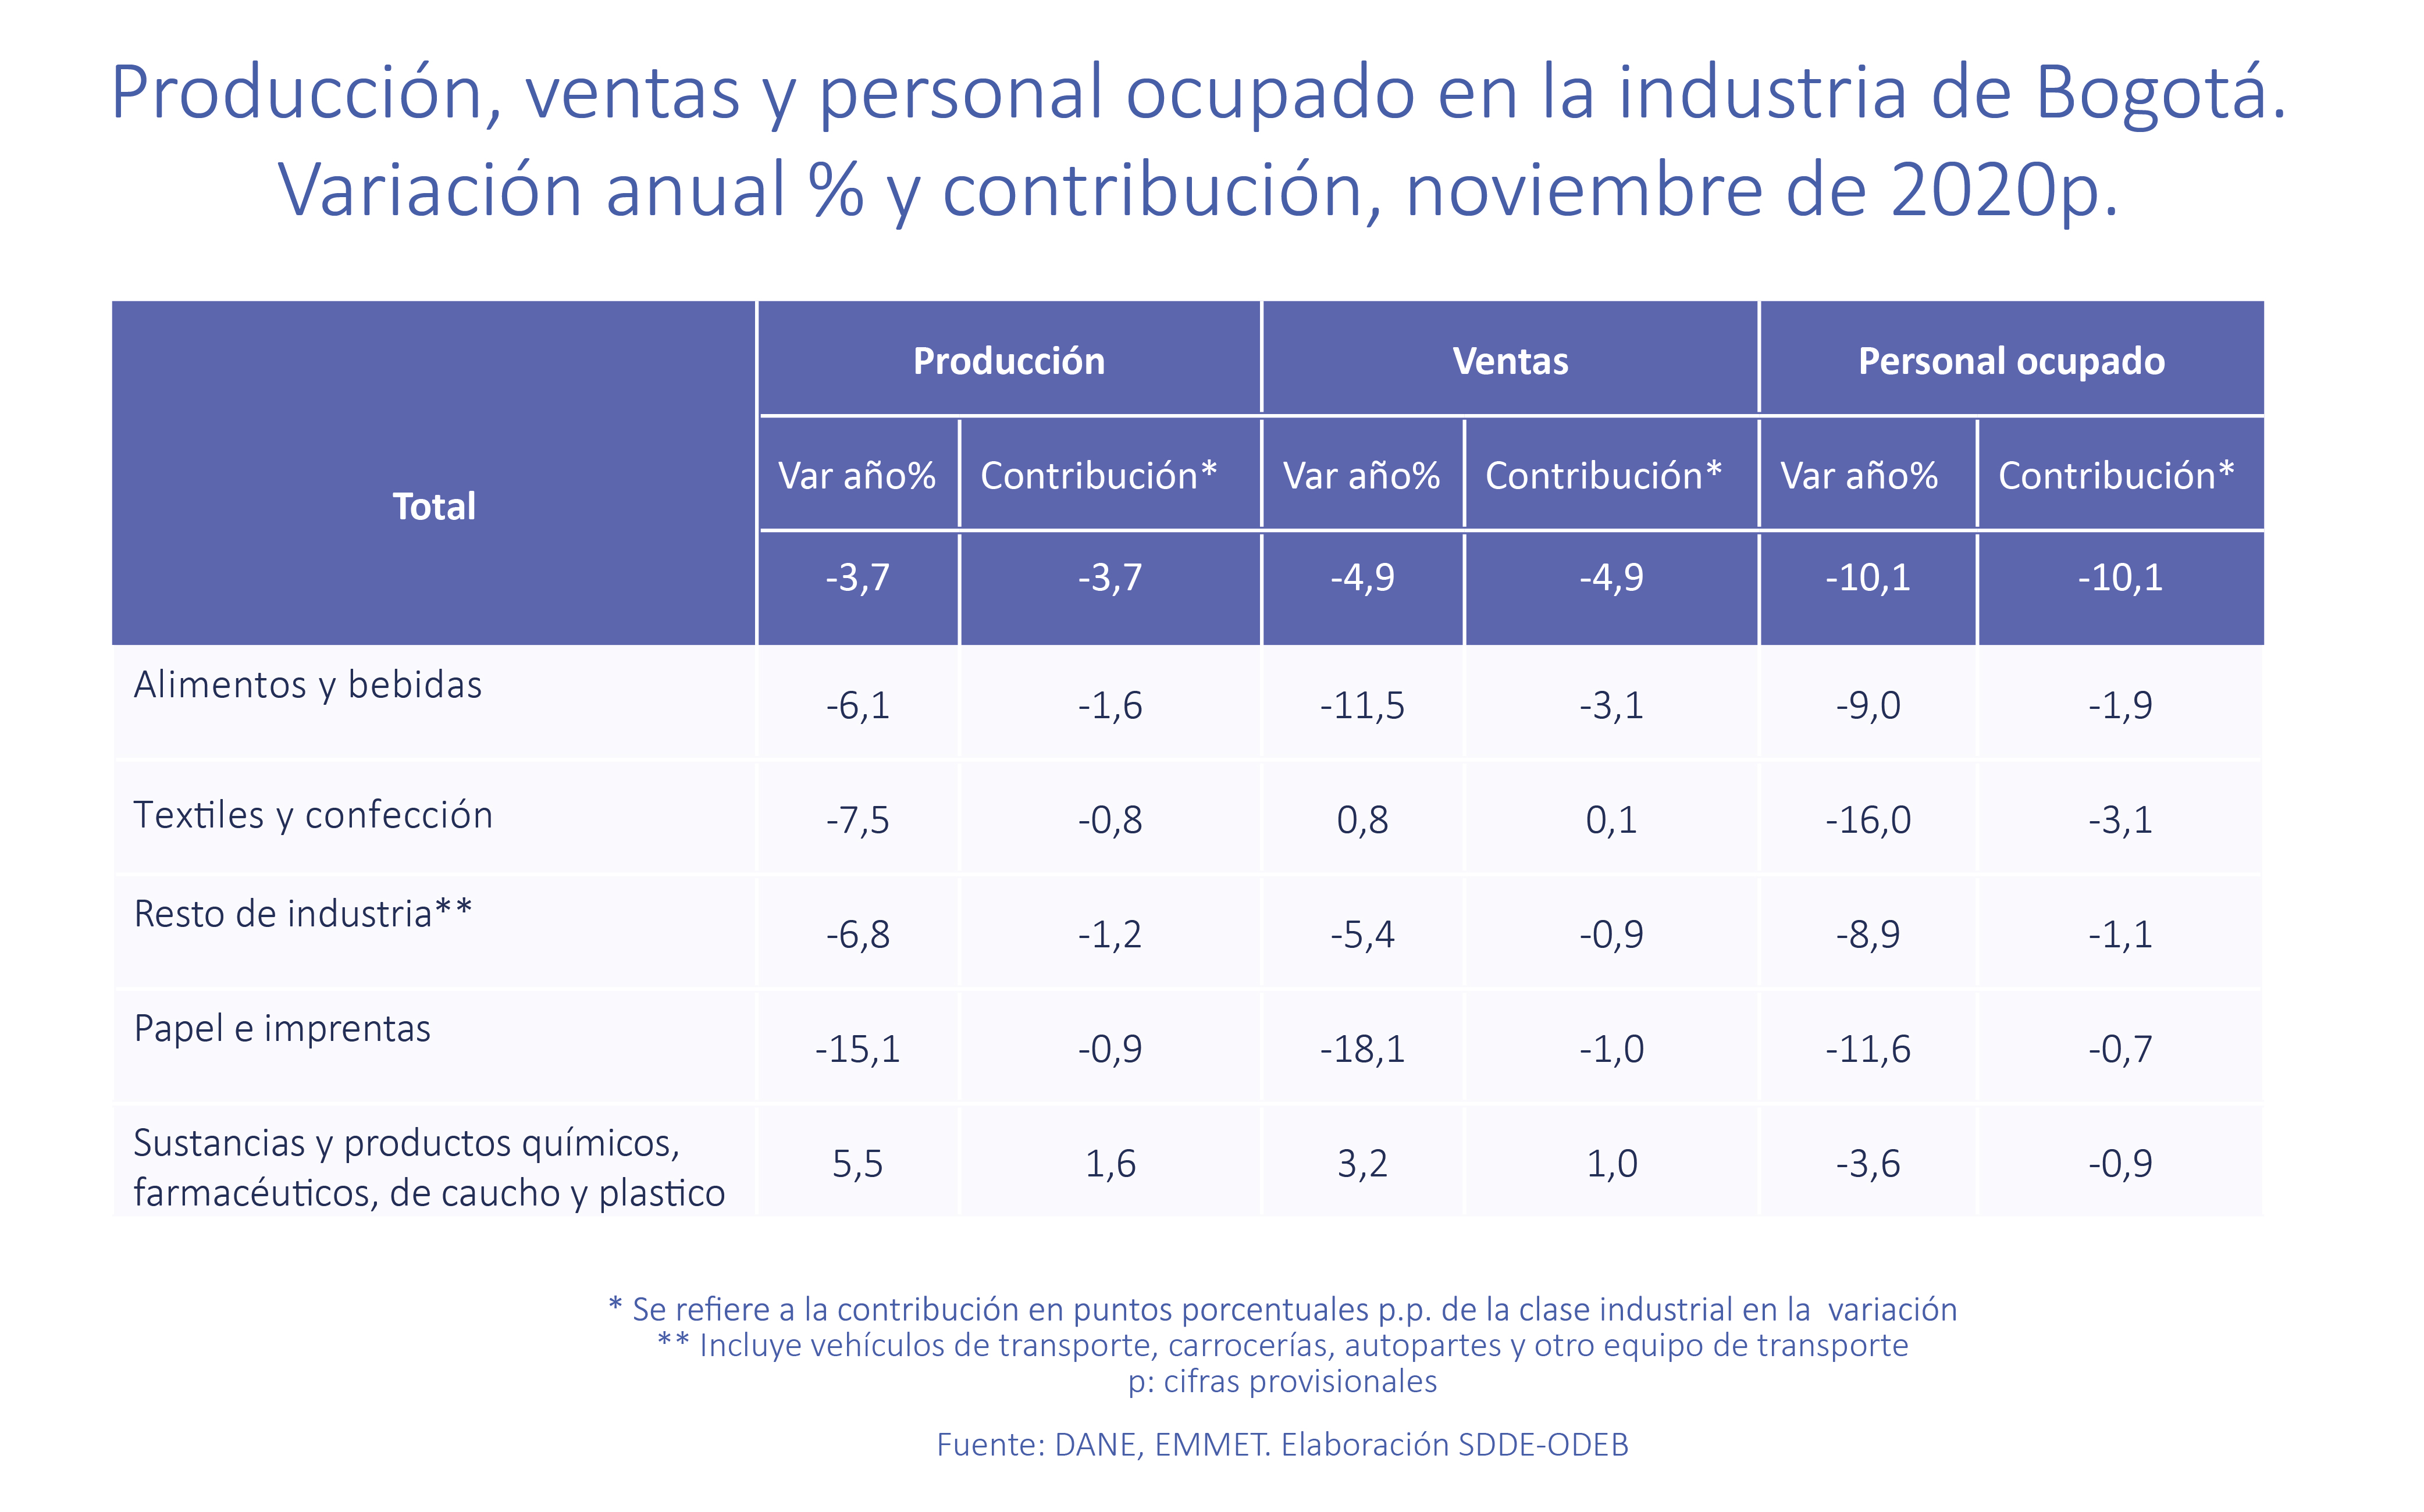 Producción, ventas personal ocupado en la industria de Bogotá